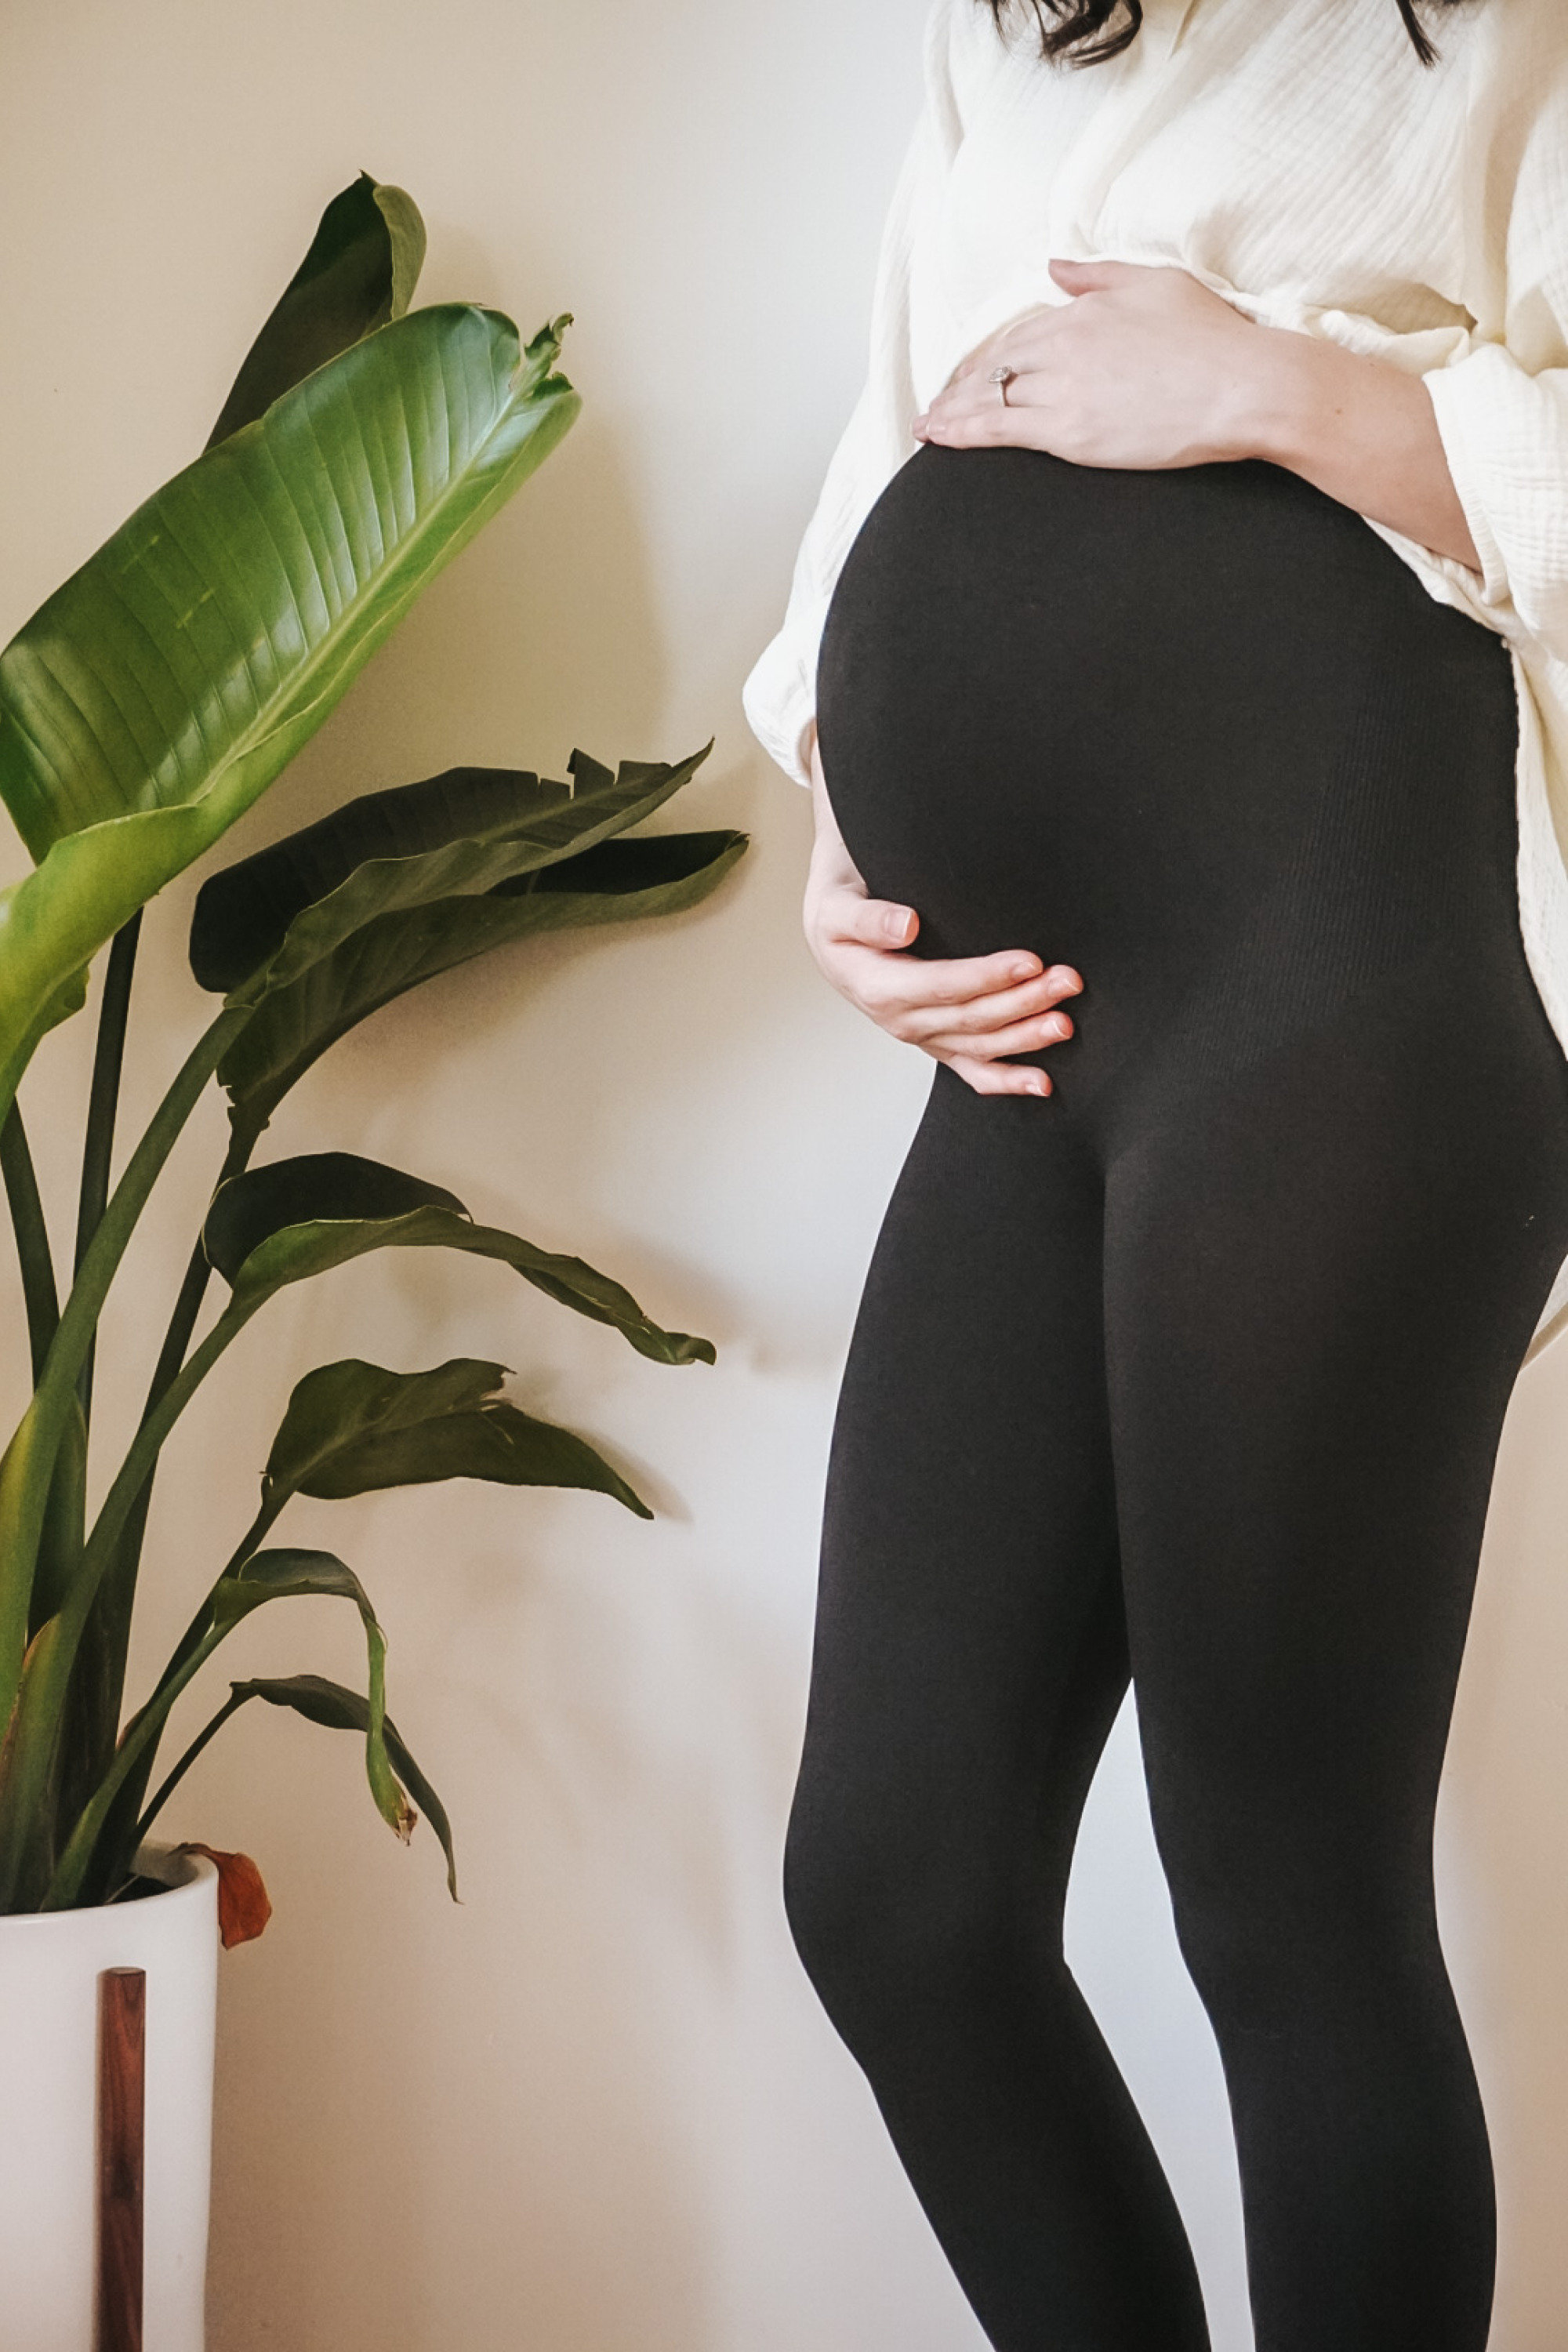 Shop Dudu TNNT Home Adjustable Short Leggings for Pregnant